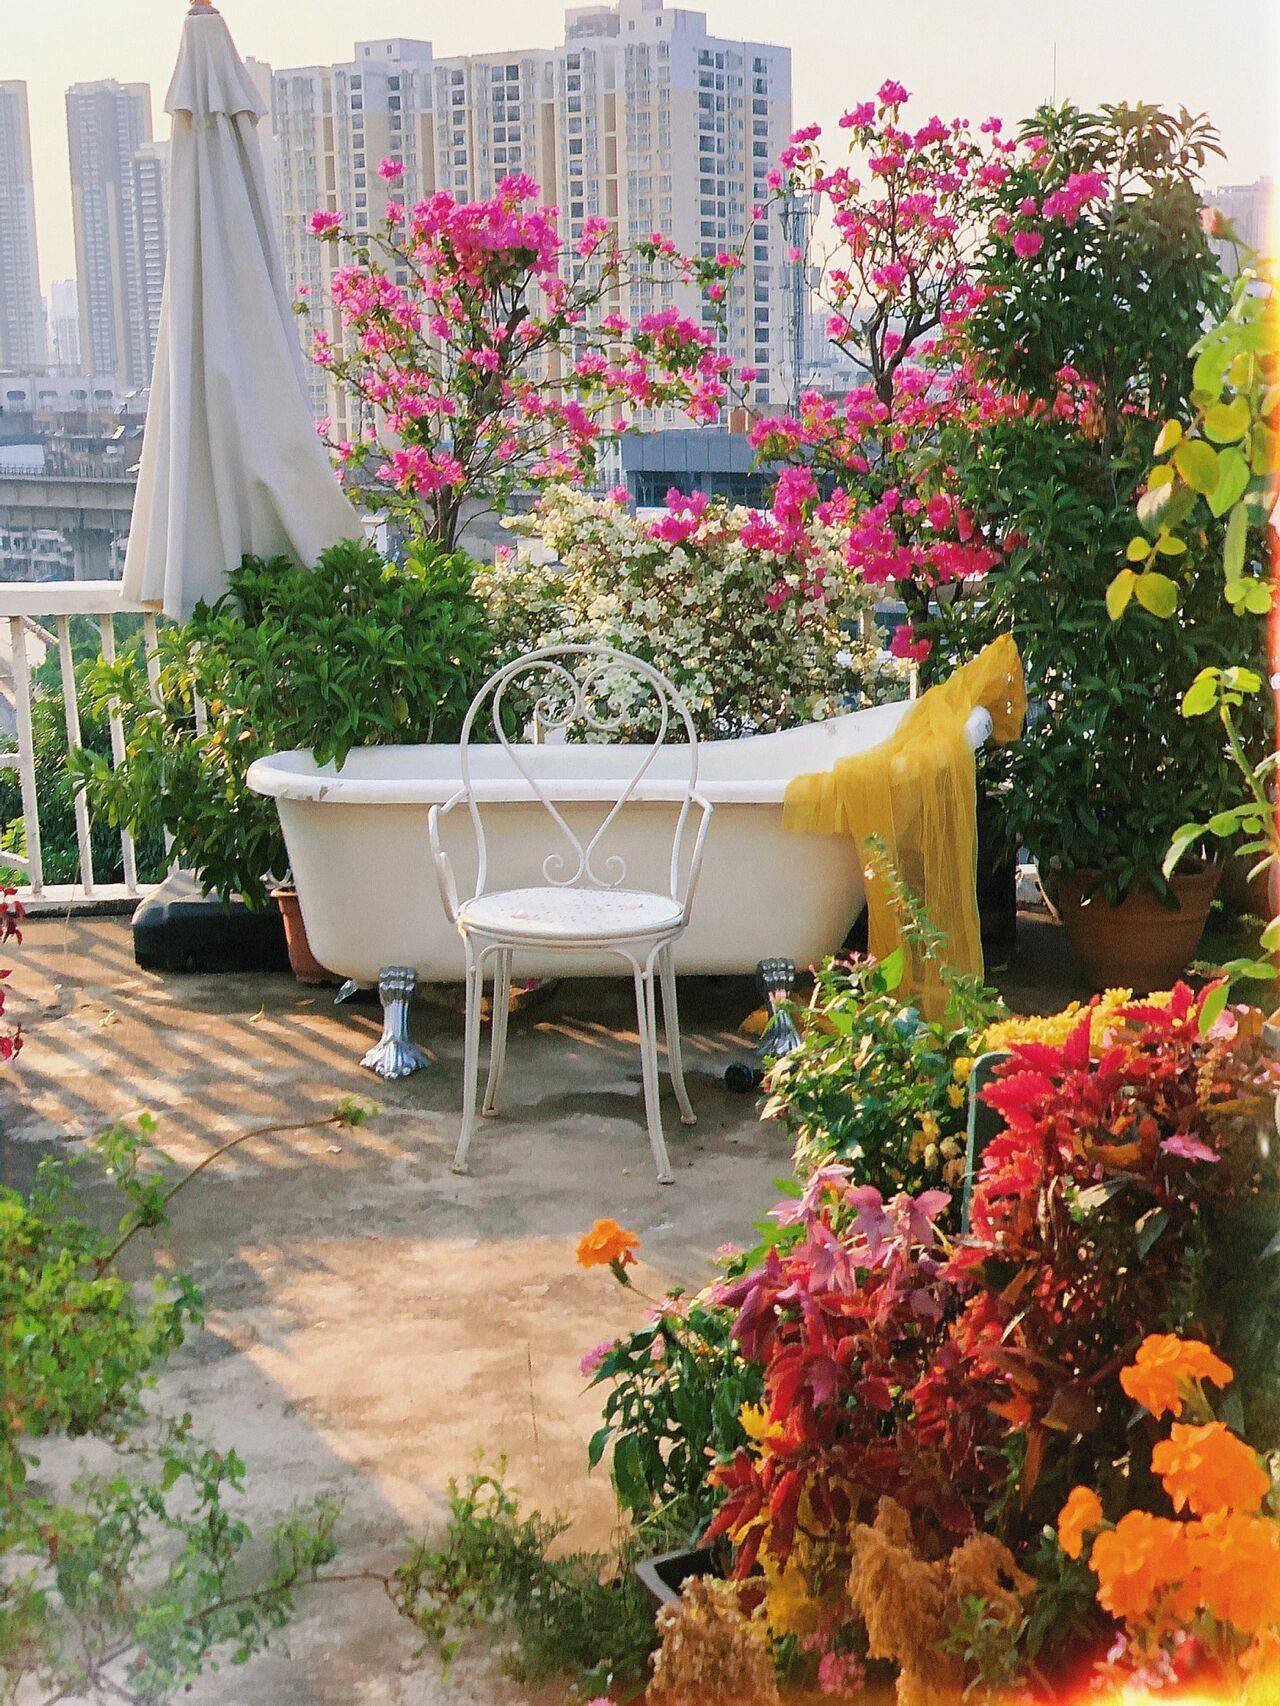 Đam mê với việc trồng hoa, cô gái 27 tuổi thuê nhà trên sân thượng để tạo ra khu vườn đẹp như tranh vẽ